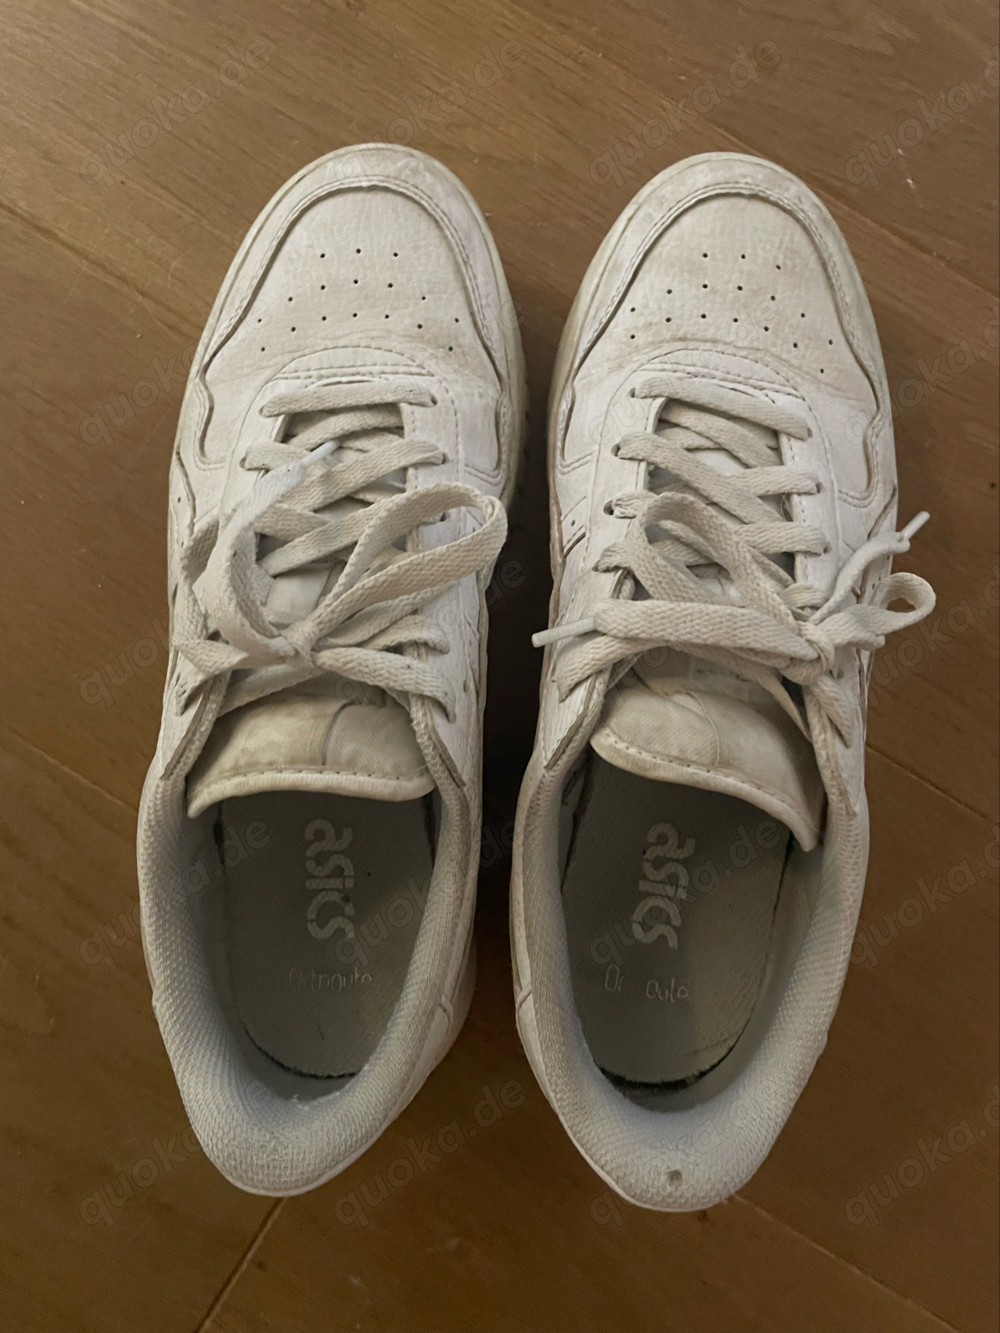 Intensiv riechende Schuhe ein halbes Jahr getragen (und immernoch)     